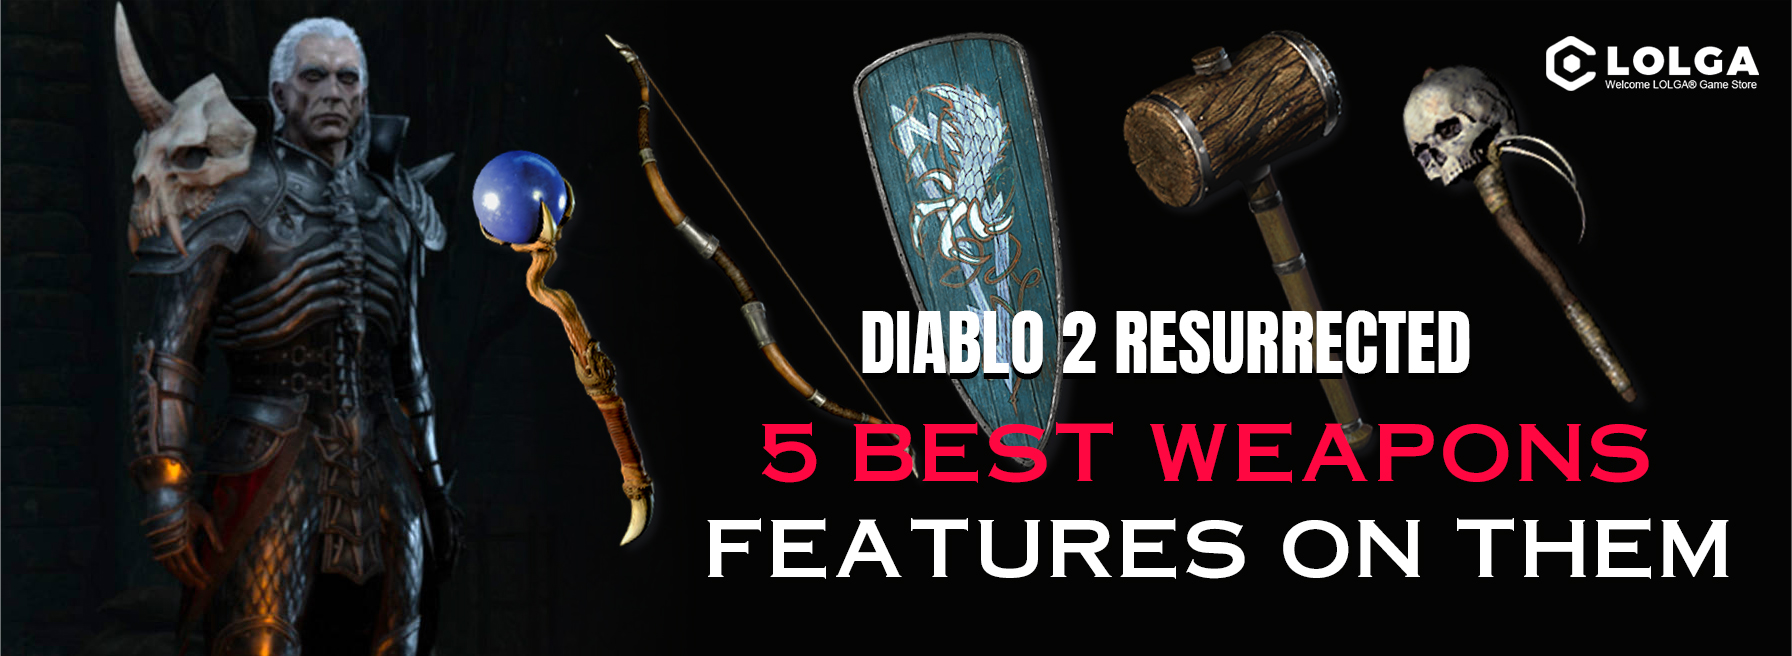 Diablo II Resurrected: 5 Best Weapons, Features on Them 